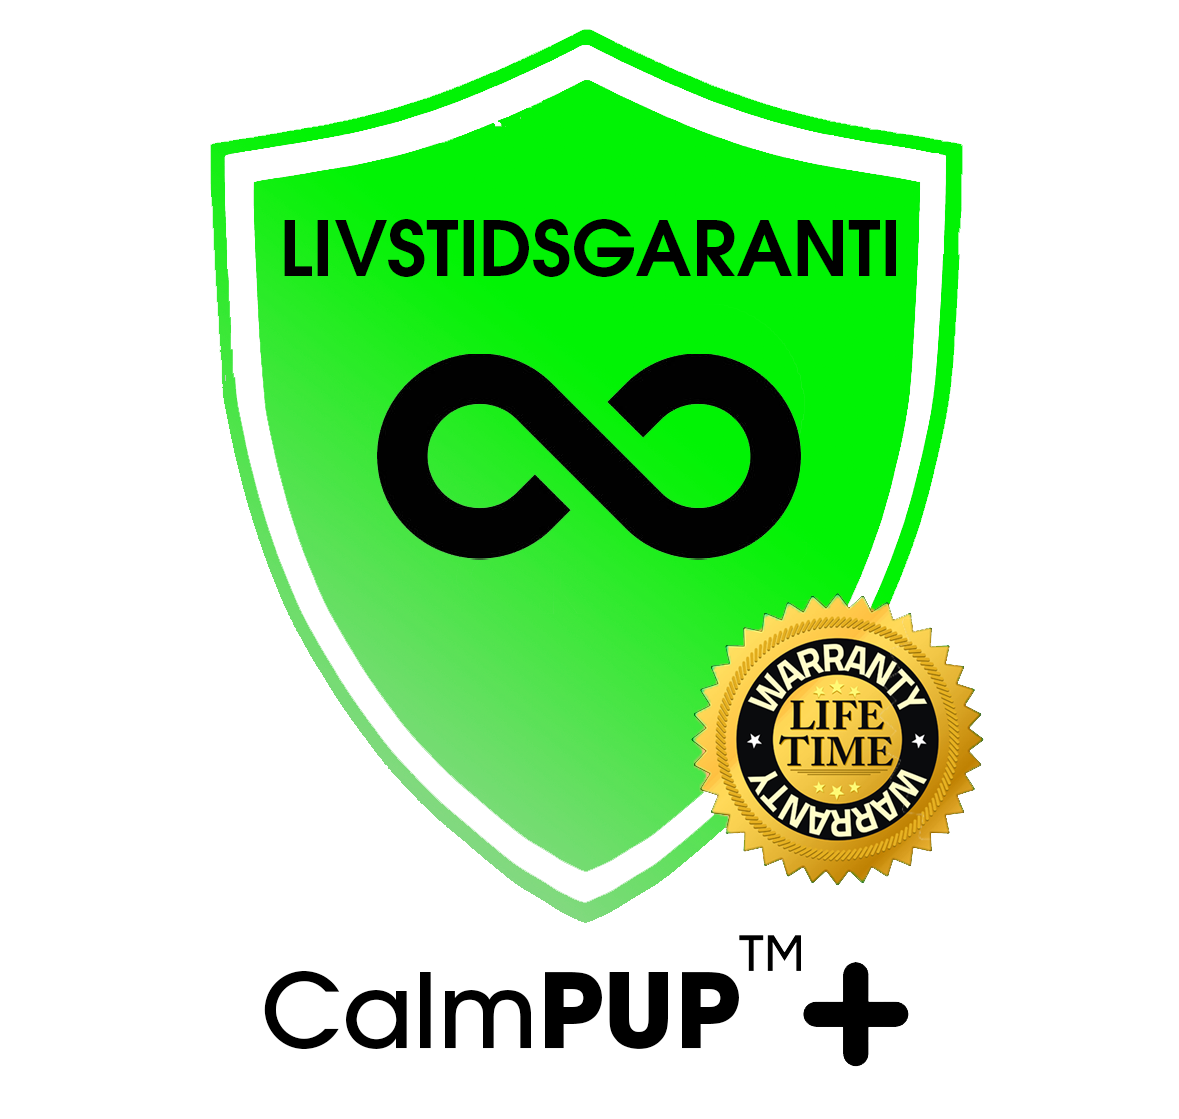 Livstidsgaranti for CalmPUP+